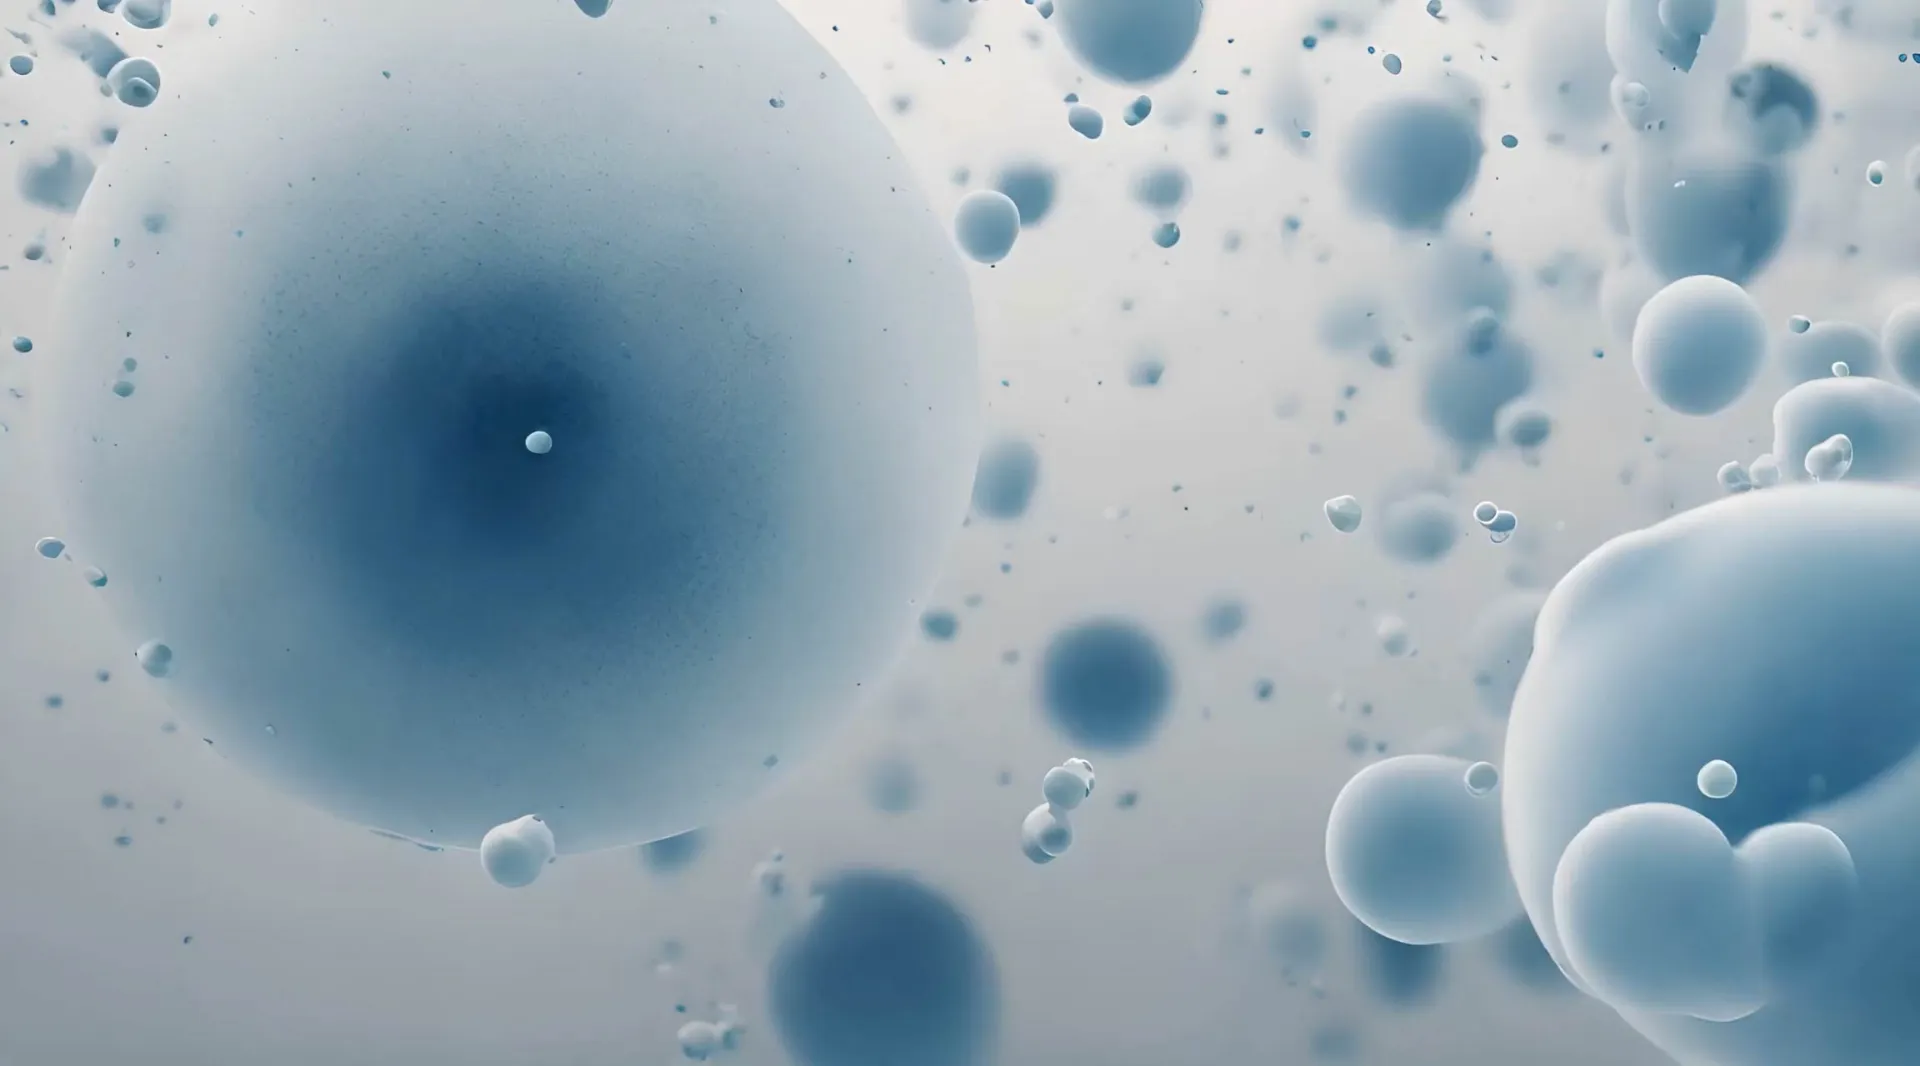 Microscopic Serenity Blue Bubbles Backdrop